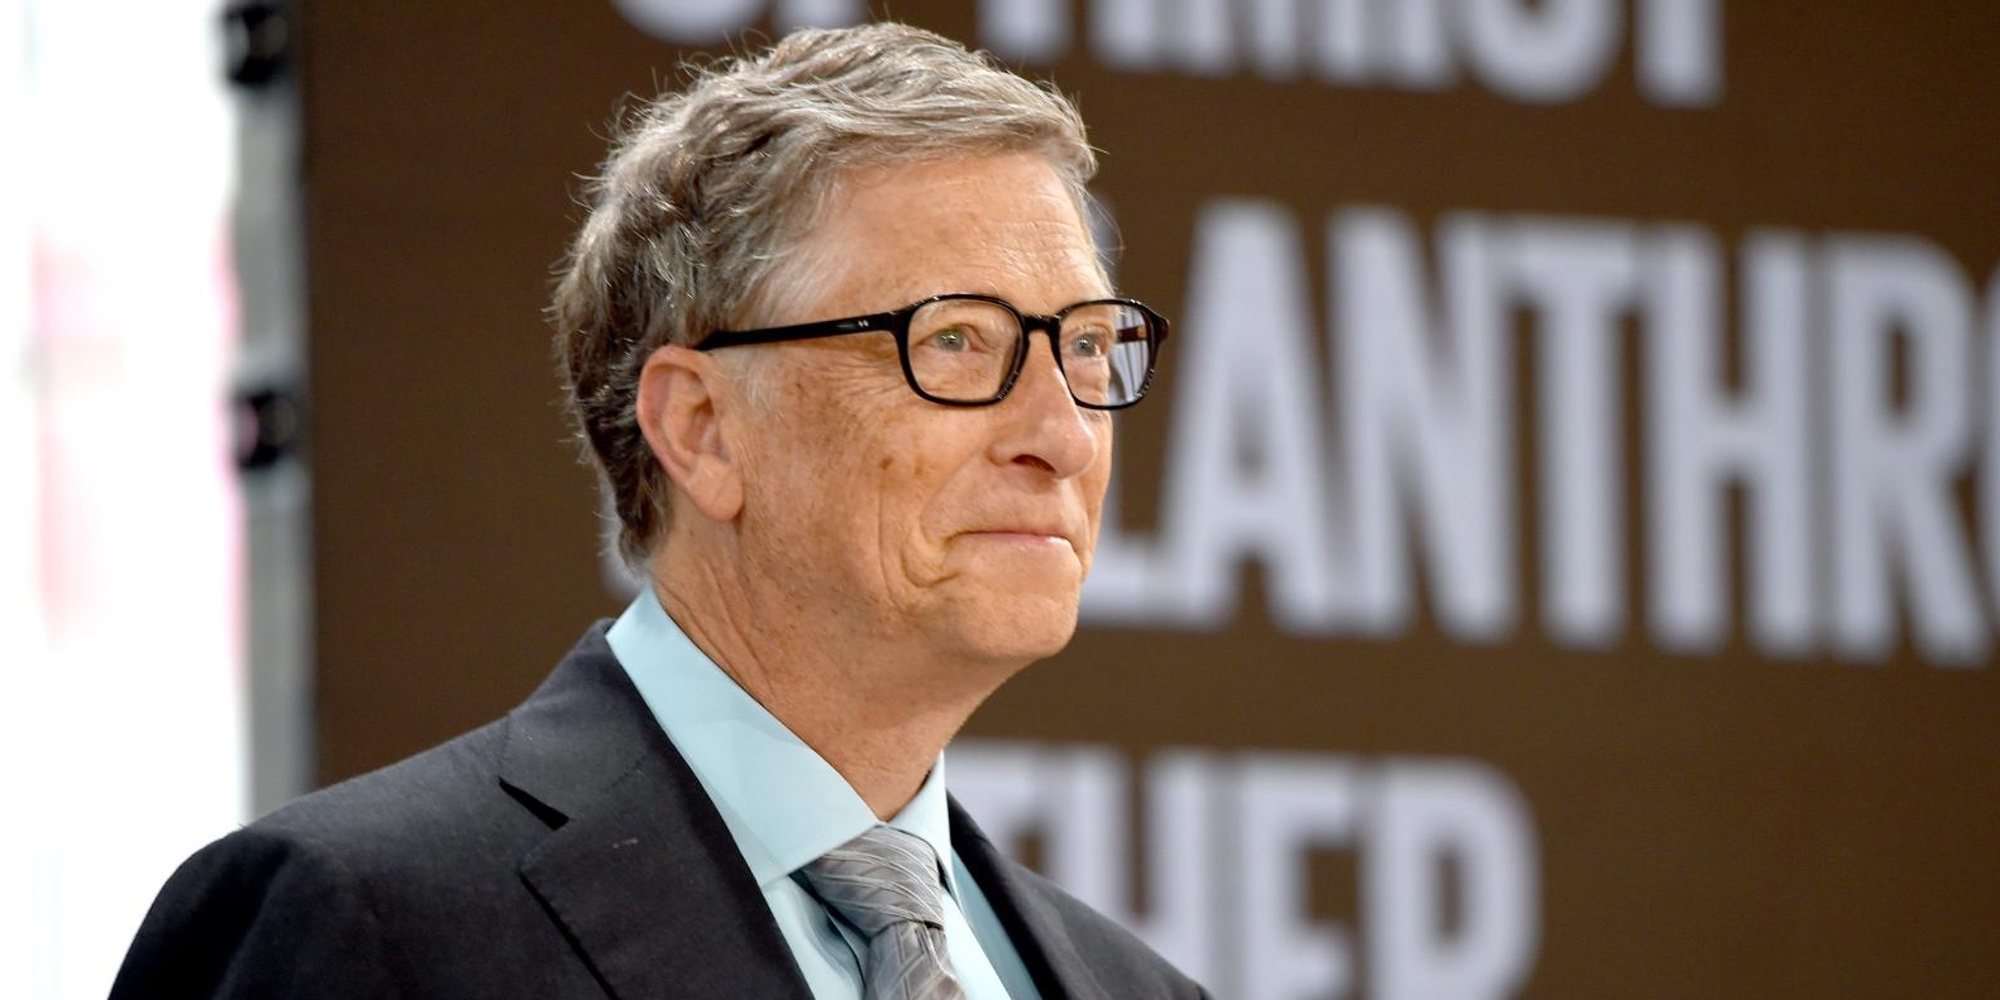 El vínculo de Bill Gates con Jeffrey Epstein podría haber sido uno de los detonantes de su divorcio